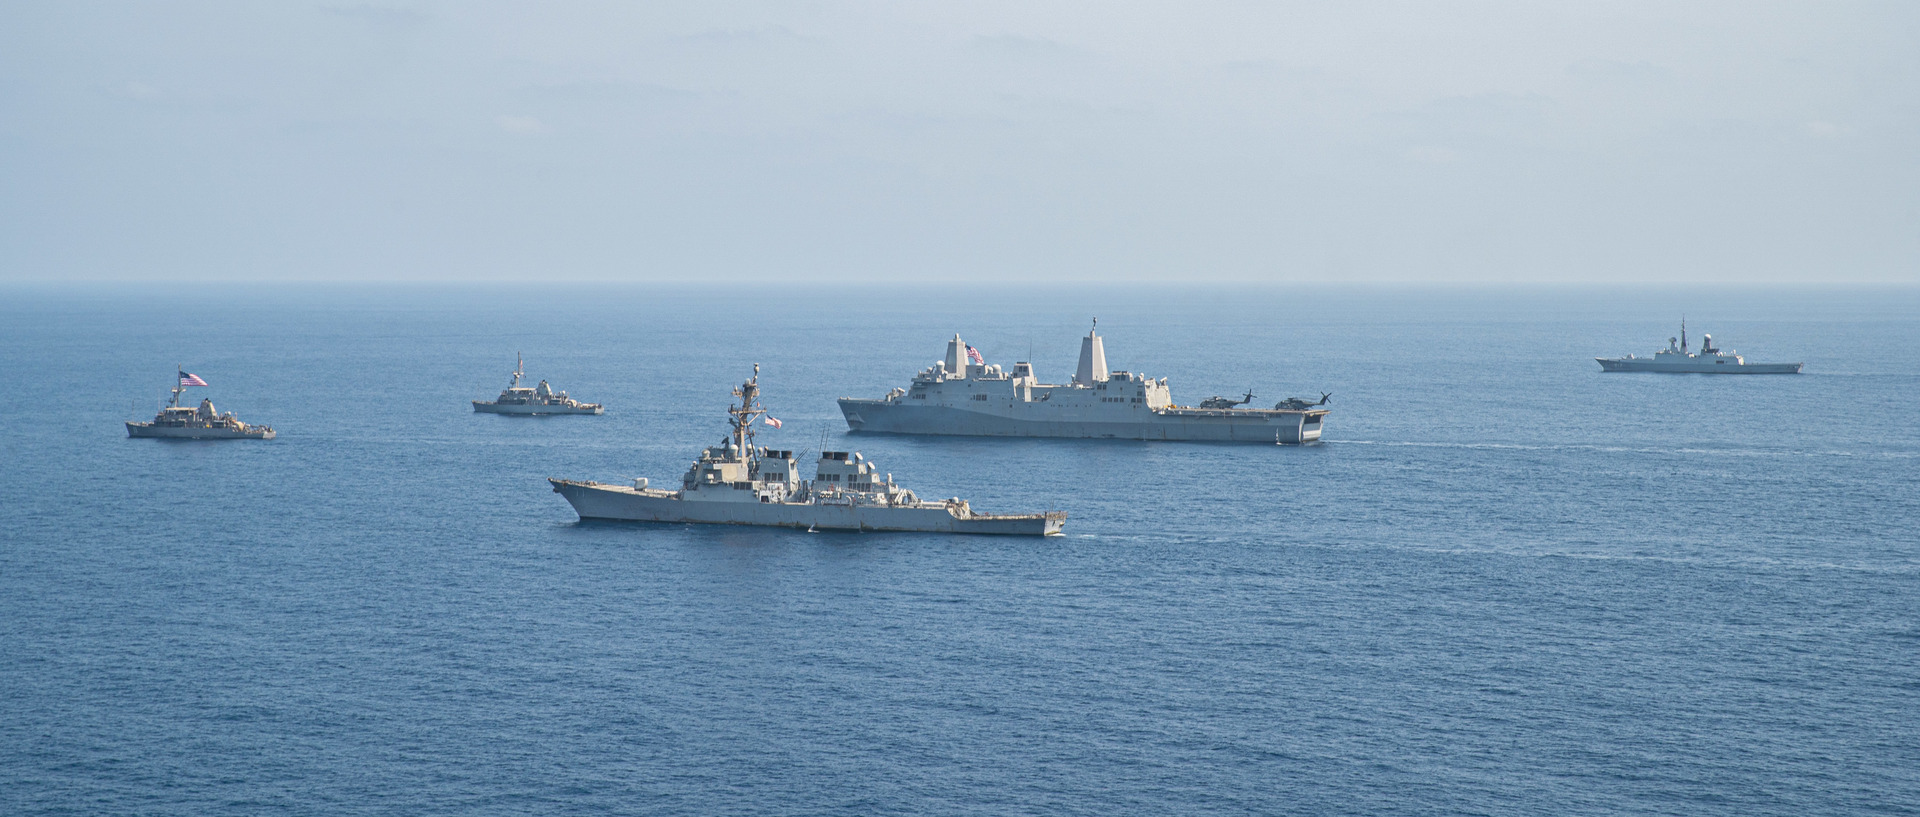 شركة أمن بحري: سفينة تجارية تعرضت لإطلاق نار عند سواحل اليمن